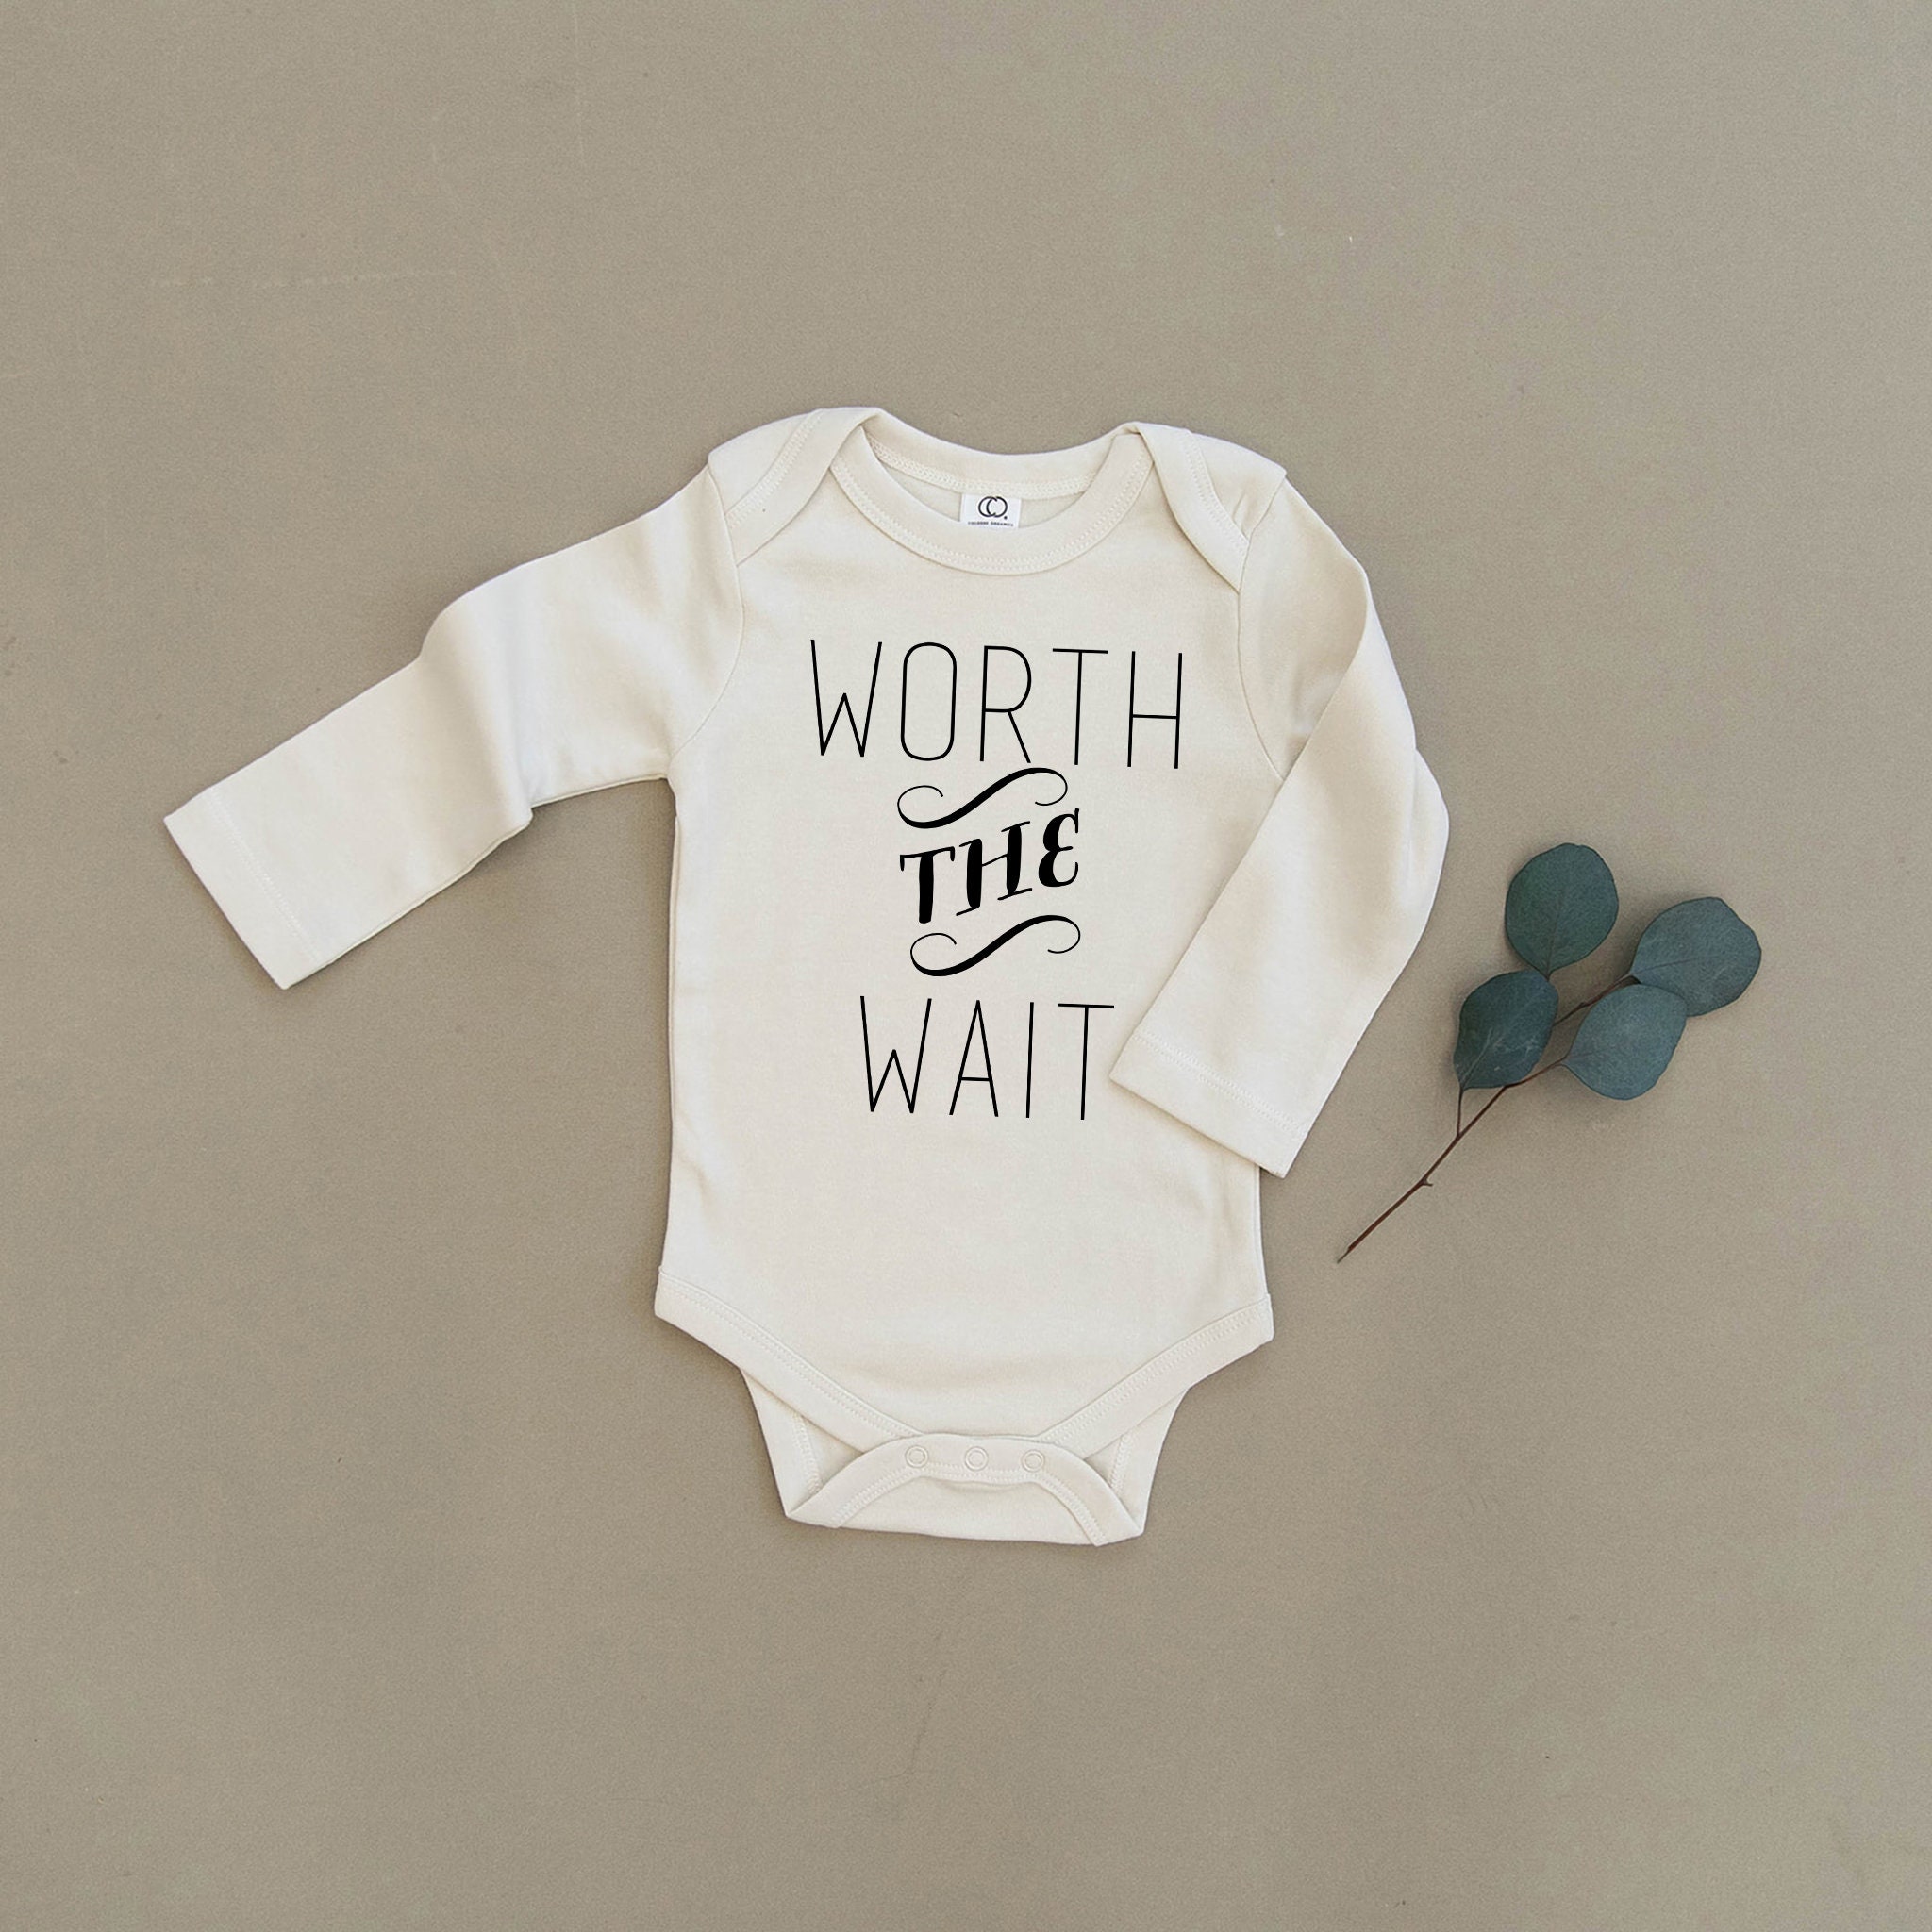 Worth The Wait Baby Boy Girl Unisex Infant Toddler | Etsy